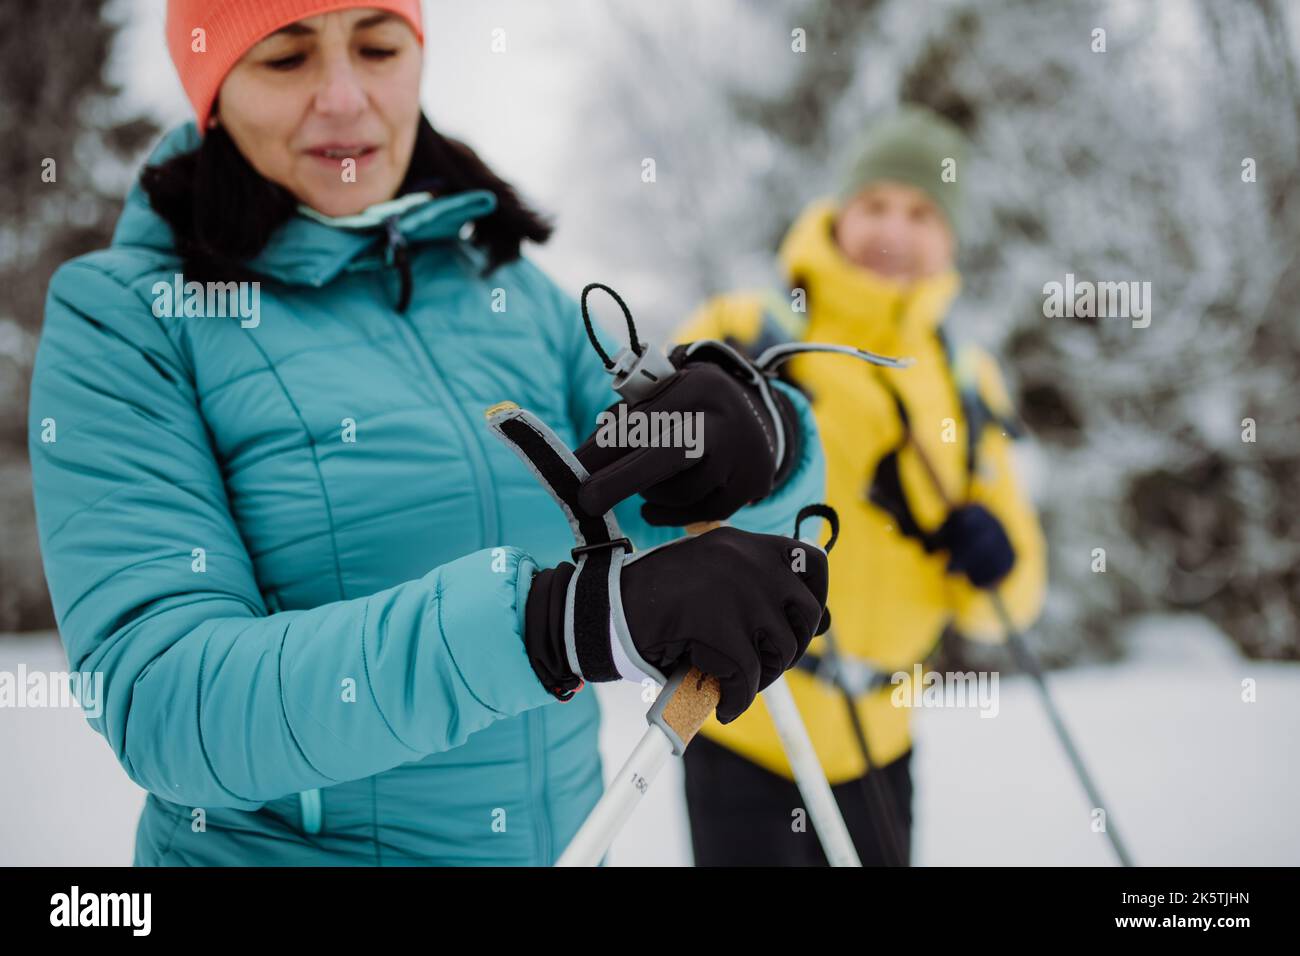 Guantes De Esquí Para Esquiar En Invierno Fotos, retratos, imágenes y  fotografía de archivo libres de derecho. Image 95151603